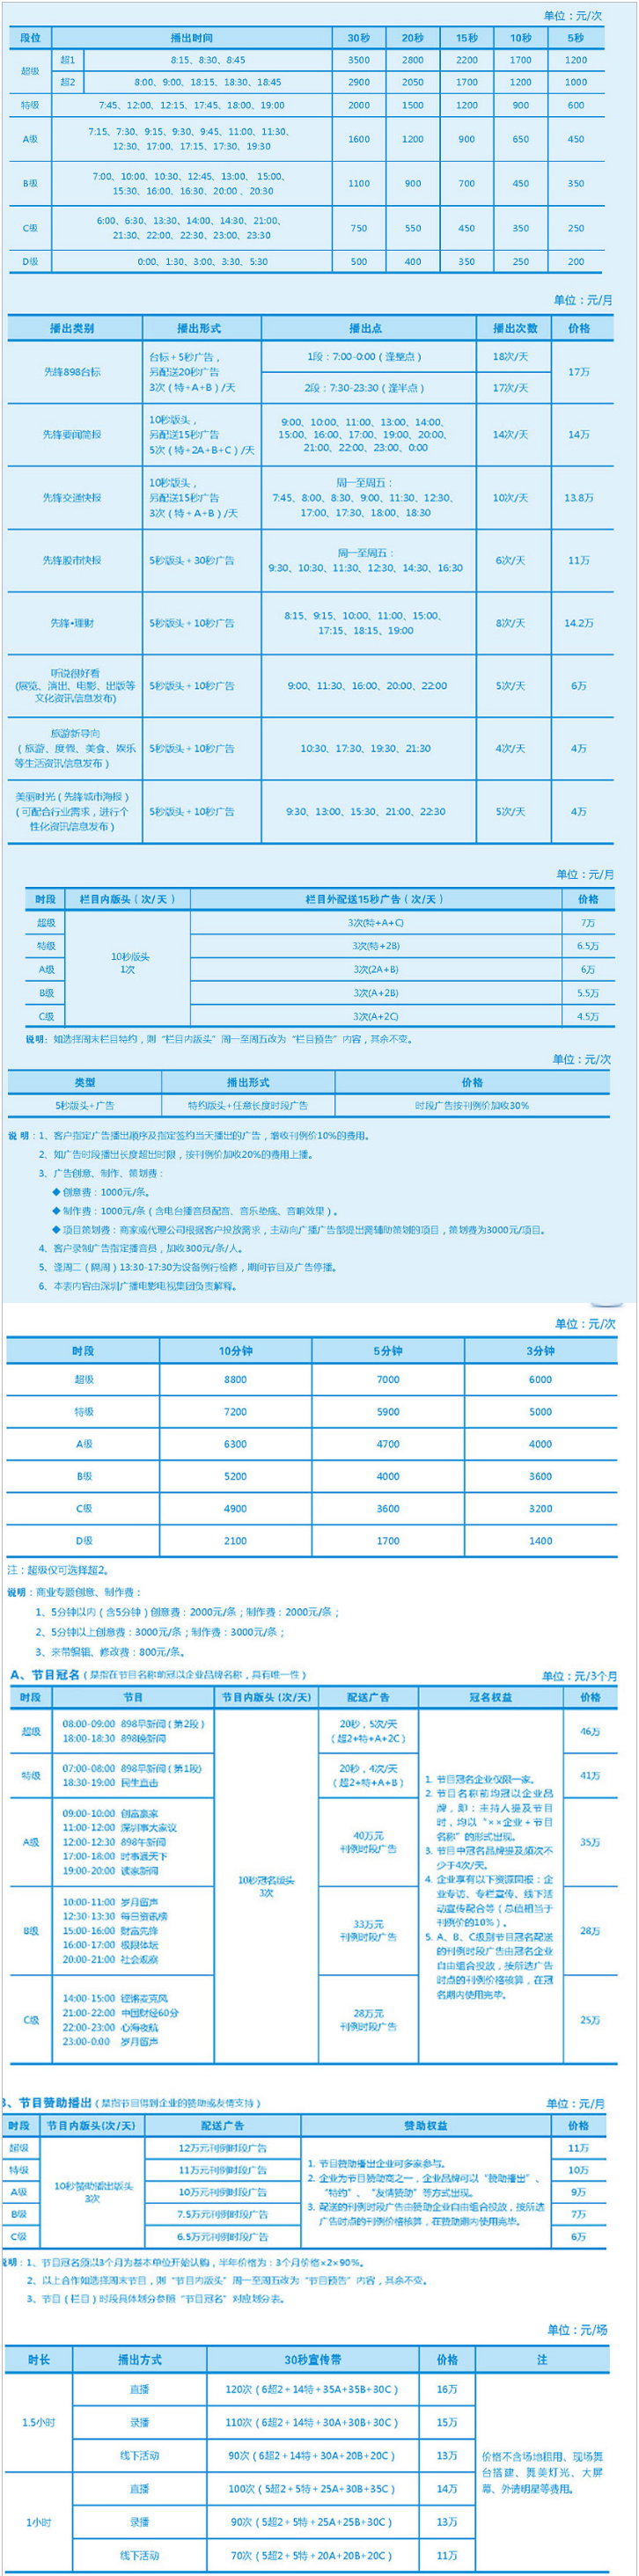 2010深圳人民广播电台新闻频率 FM89.8广告报价表.png